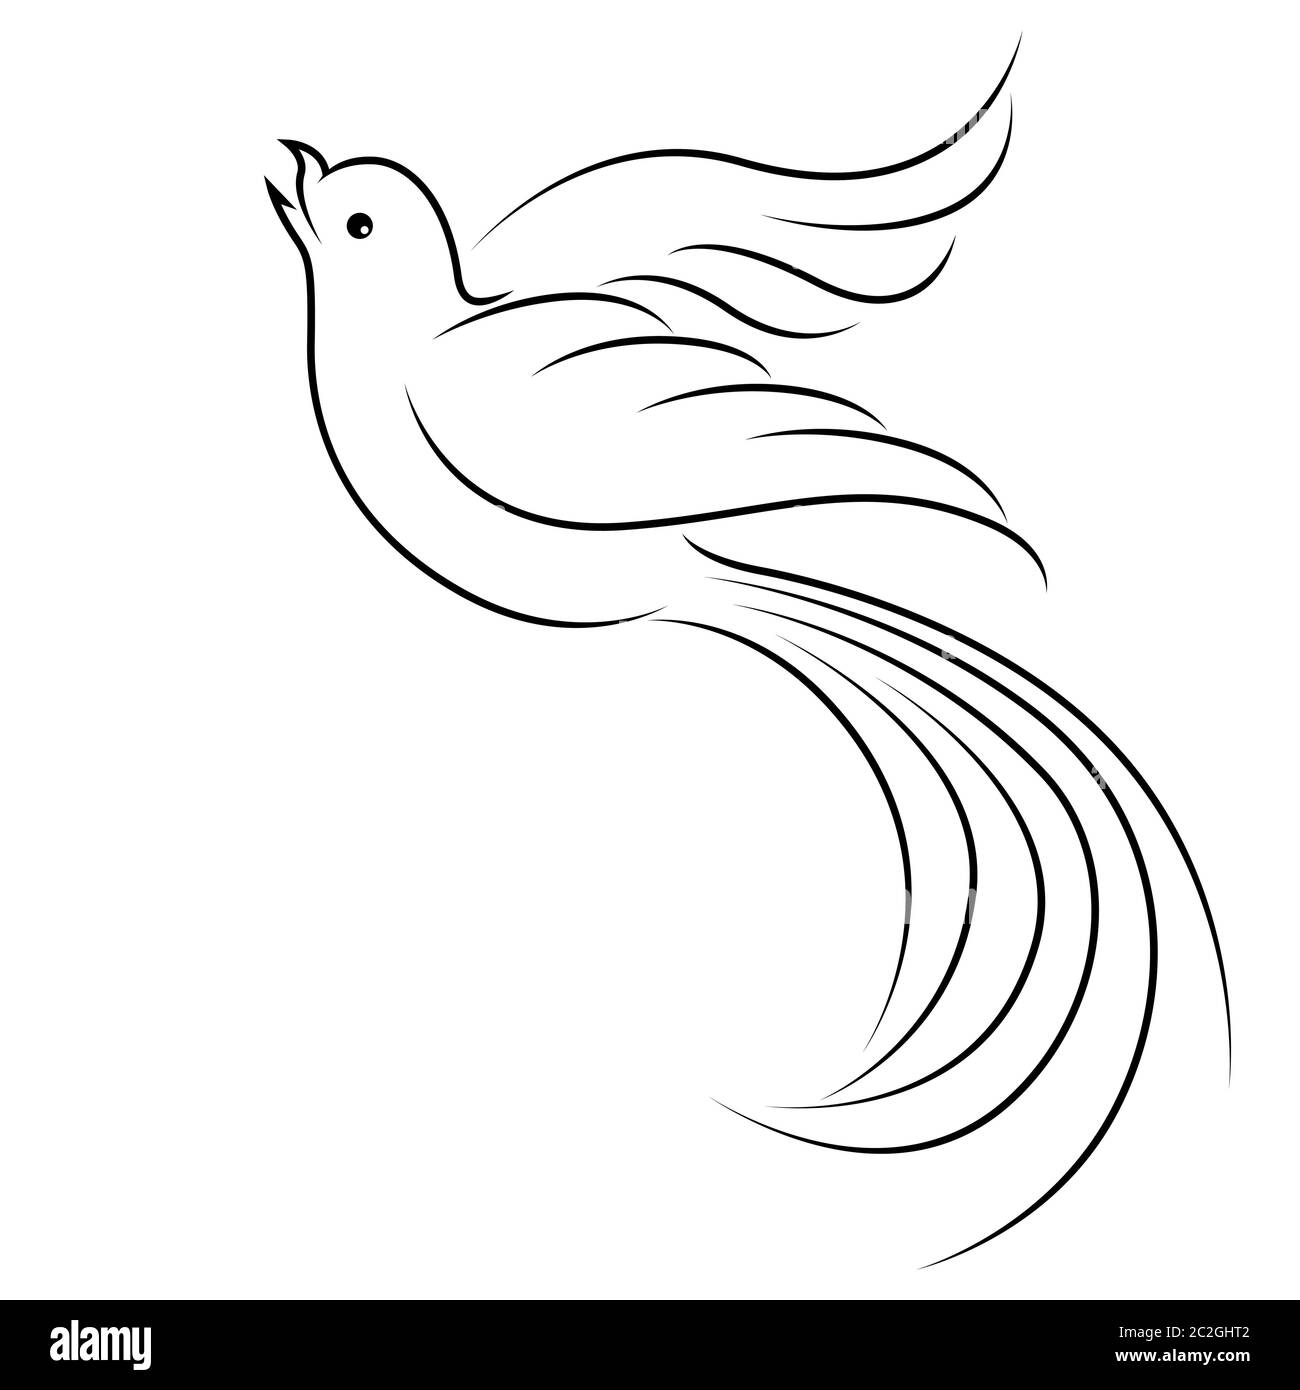 Contour noir de l'oiseau volant, illustration isolée sur fond blanc Illustration de Vecteur